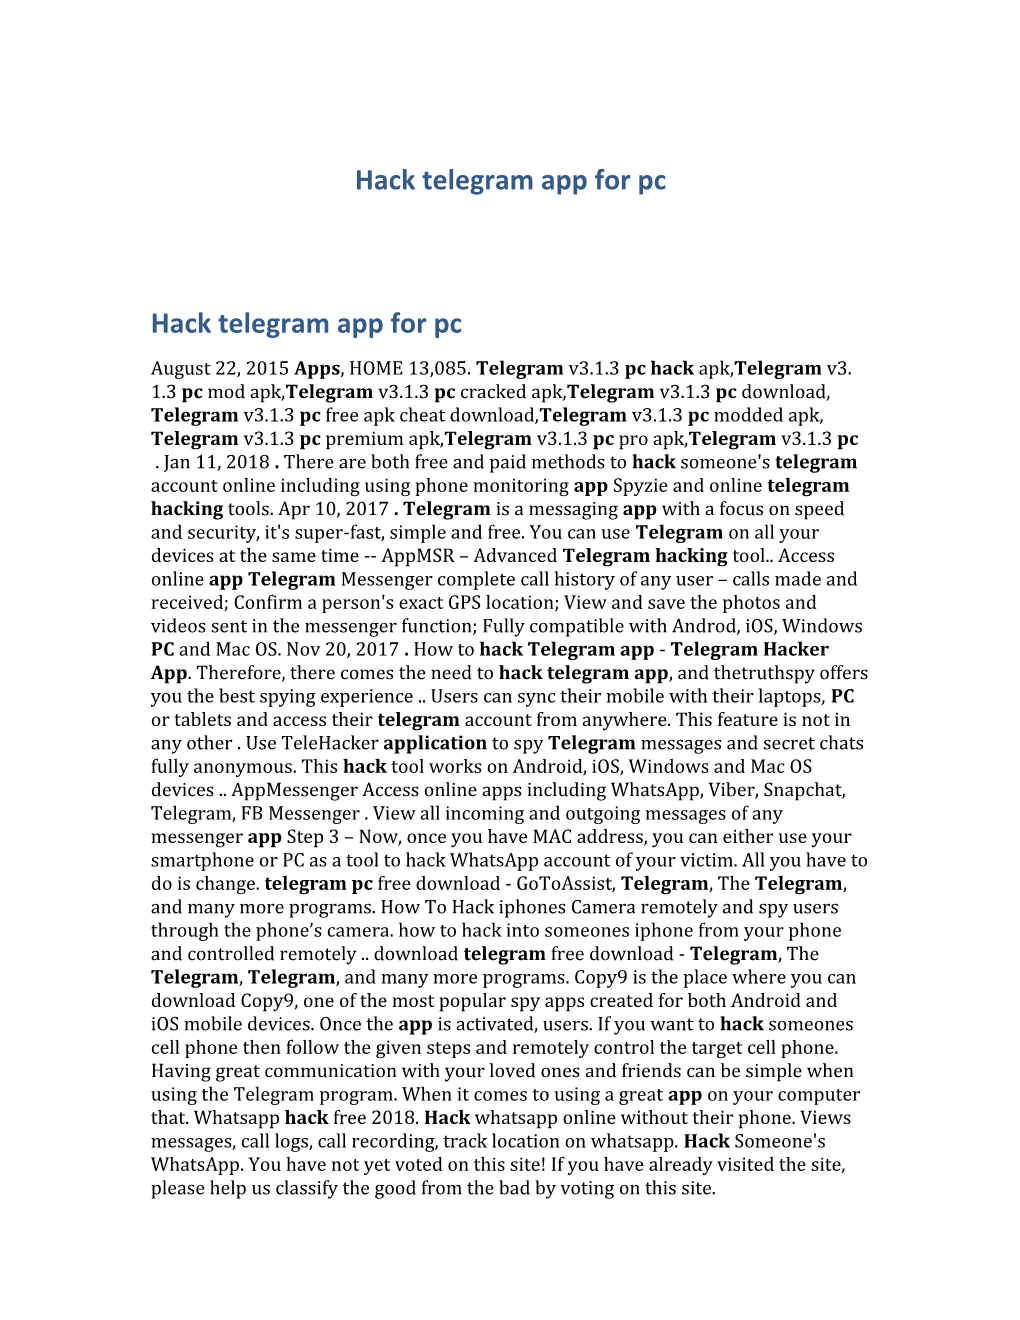 Hack Telegram App for Pc